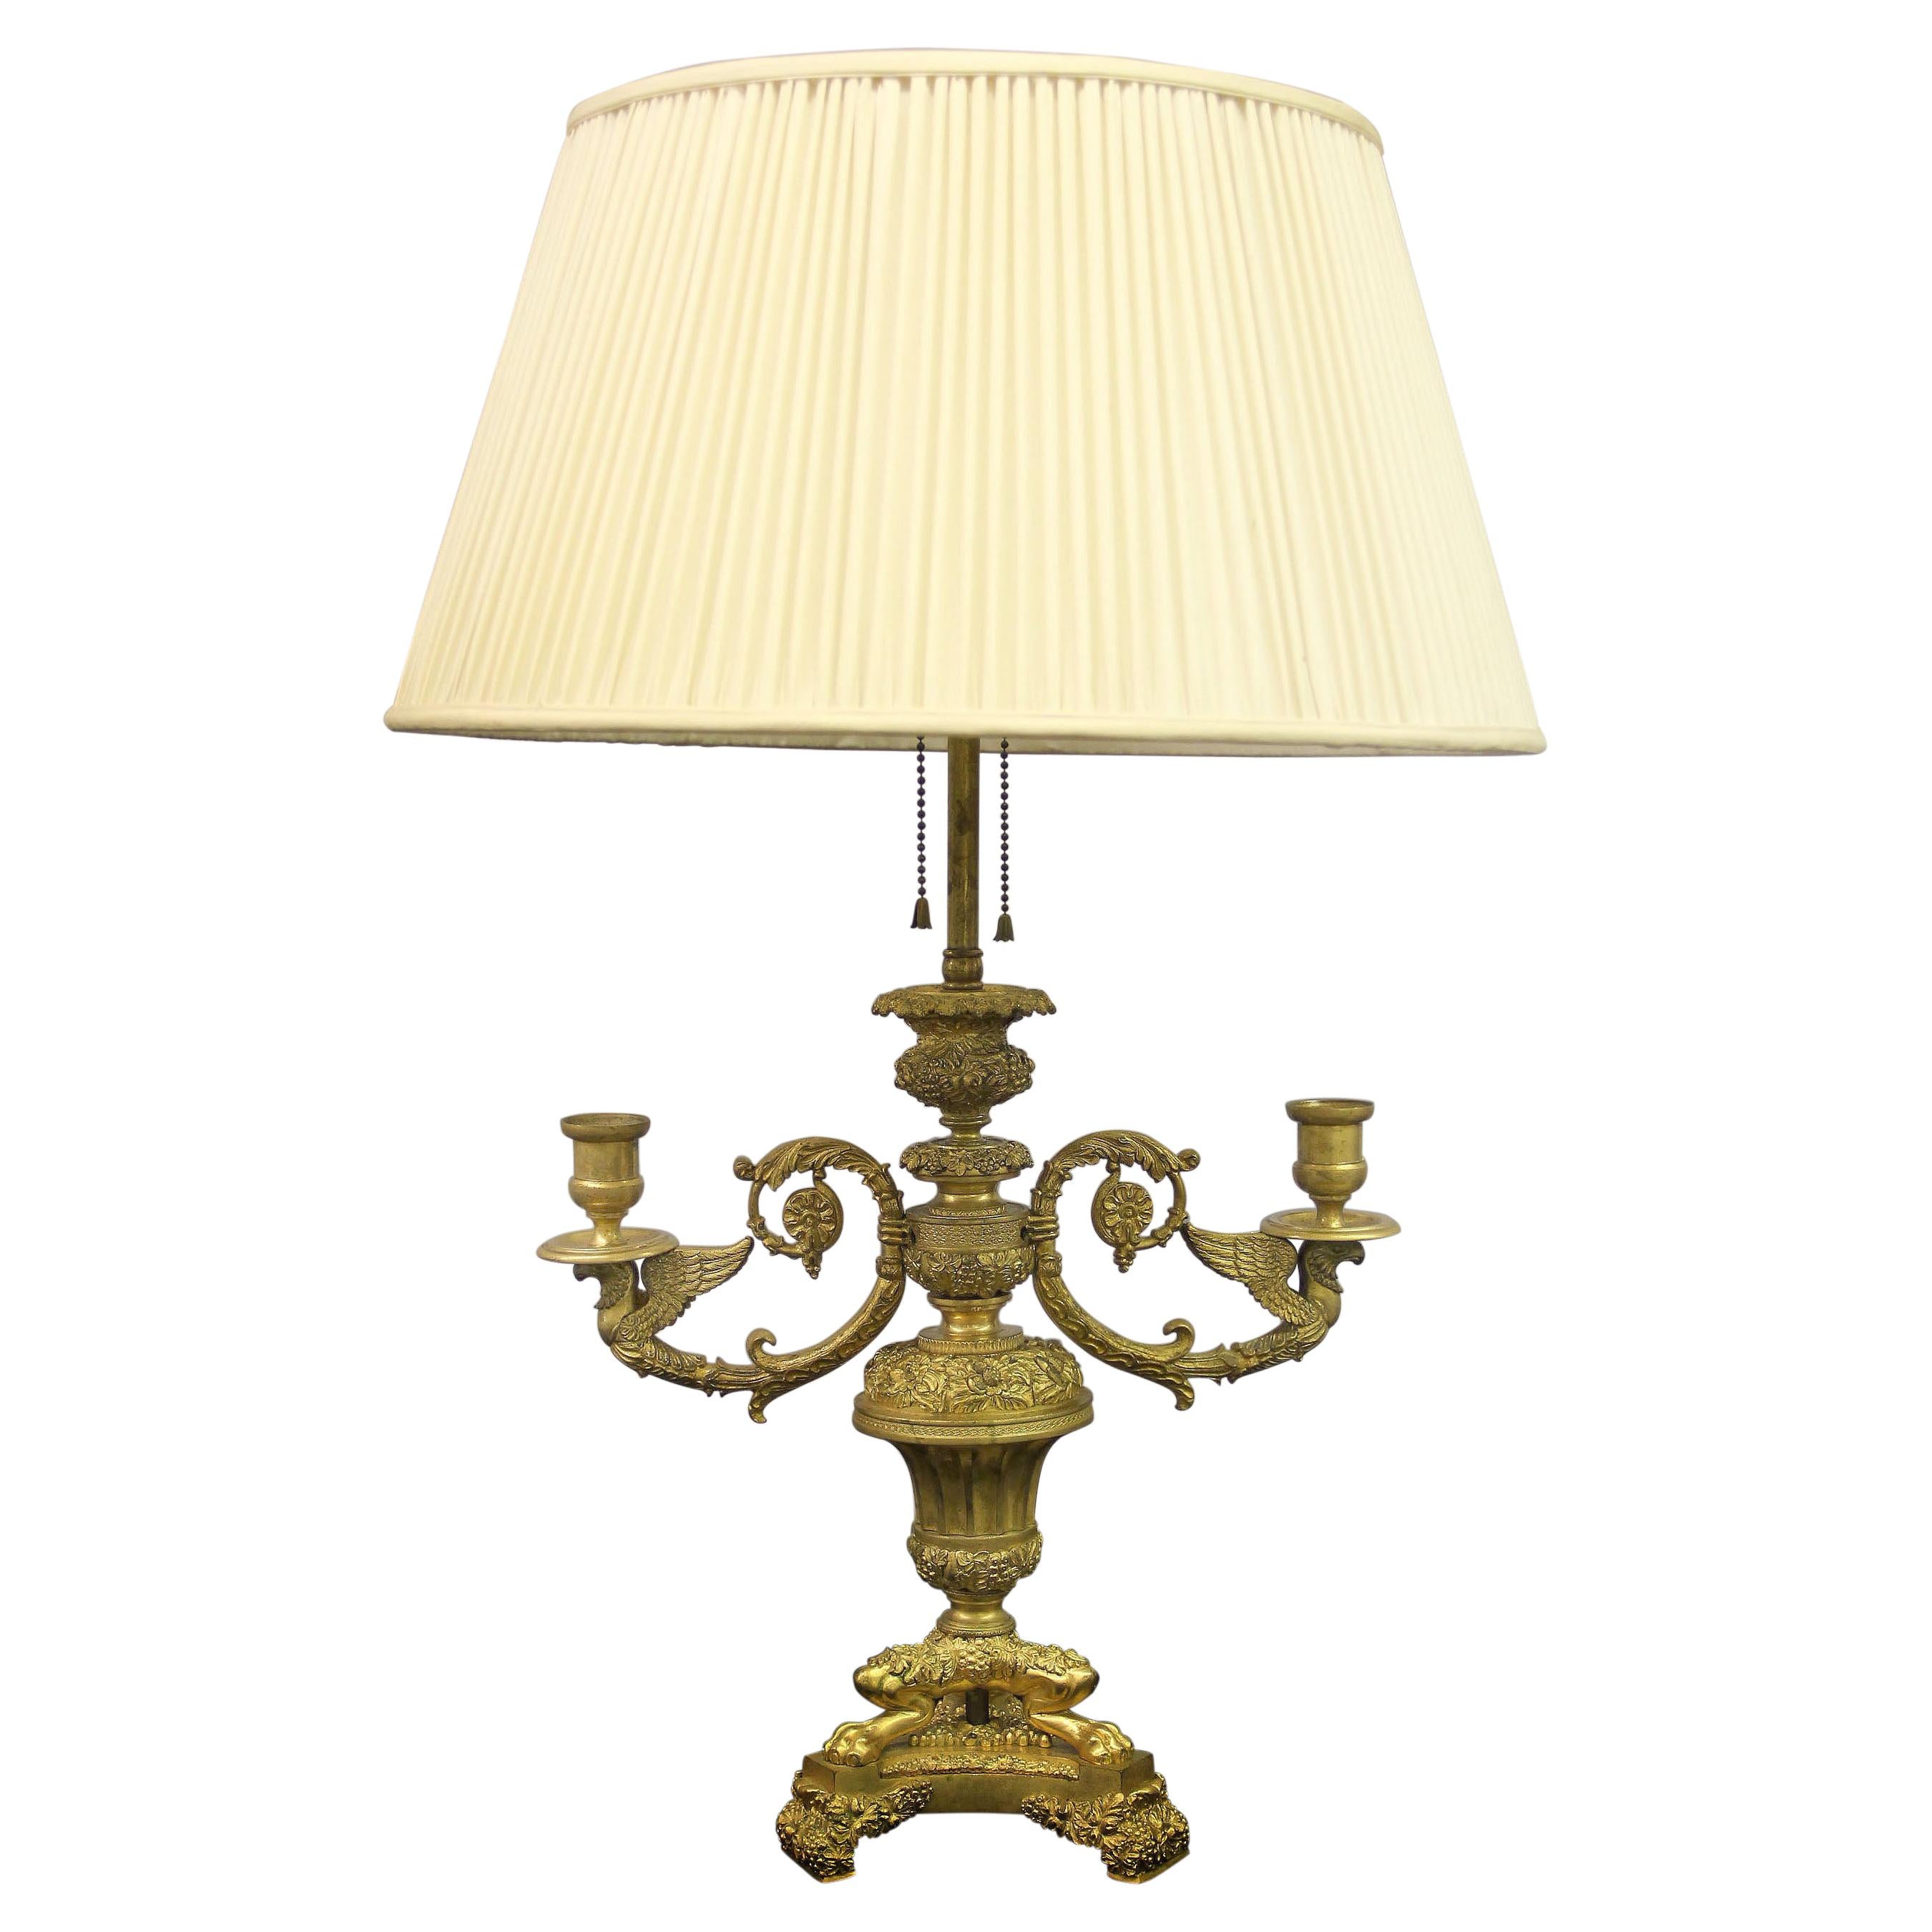 Magnifique lampe en bronze doré de style Empire de la fin du XIXe siècle